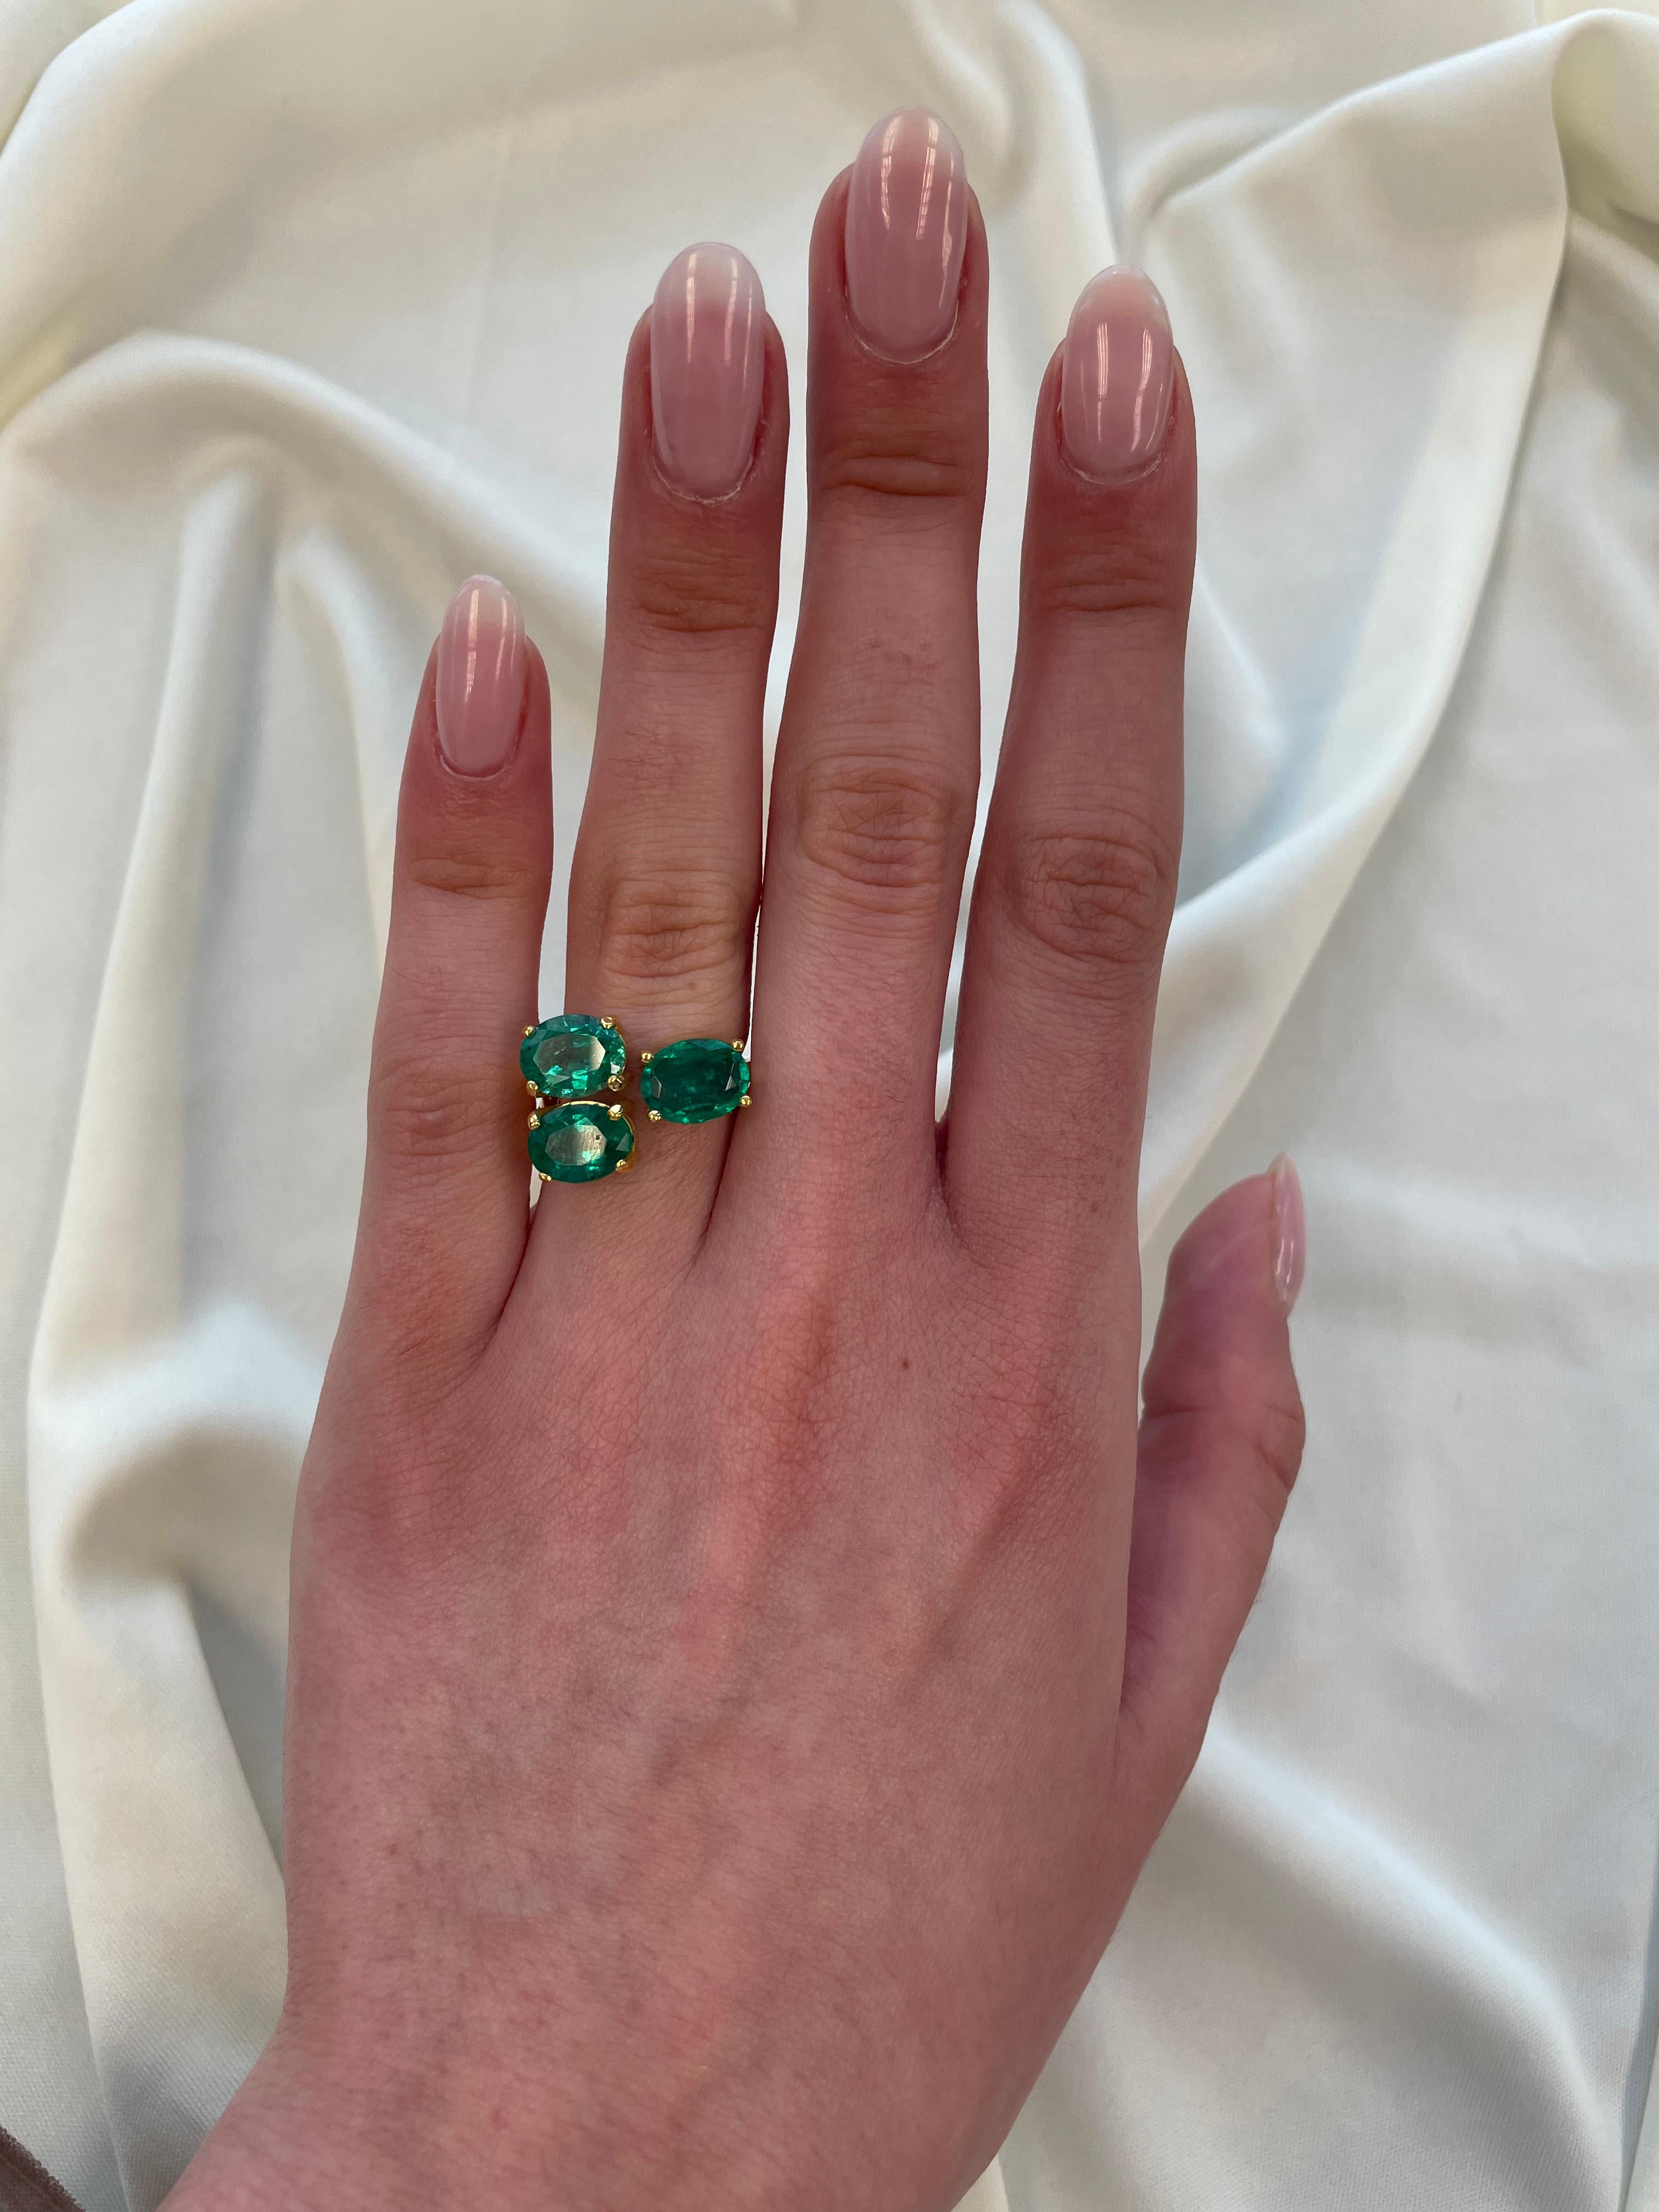 Atemberaubender moderner Ring mit schwebendem Smaragd und Diamant toi et moi. Von Alexander Beverly Hills.
3 ovale Smaragde, 4,49 Karat apx F2. 18 Karat Gelbgold, 6,79 Gramm, aktuelle Ringgröße 6.
Auf Anfrage wird ein aktuelles Gutachten eines GIA